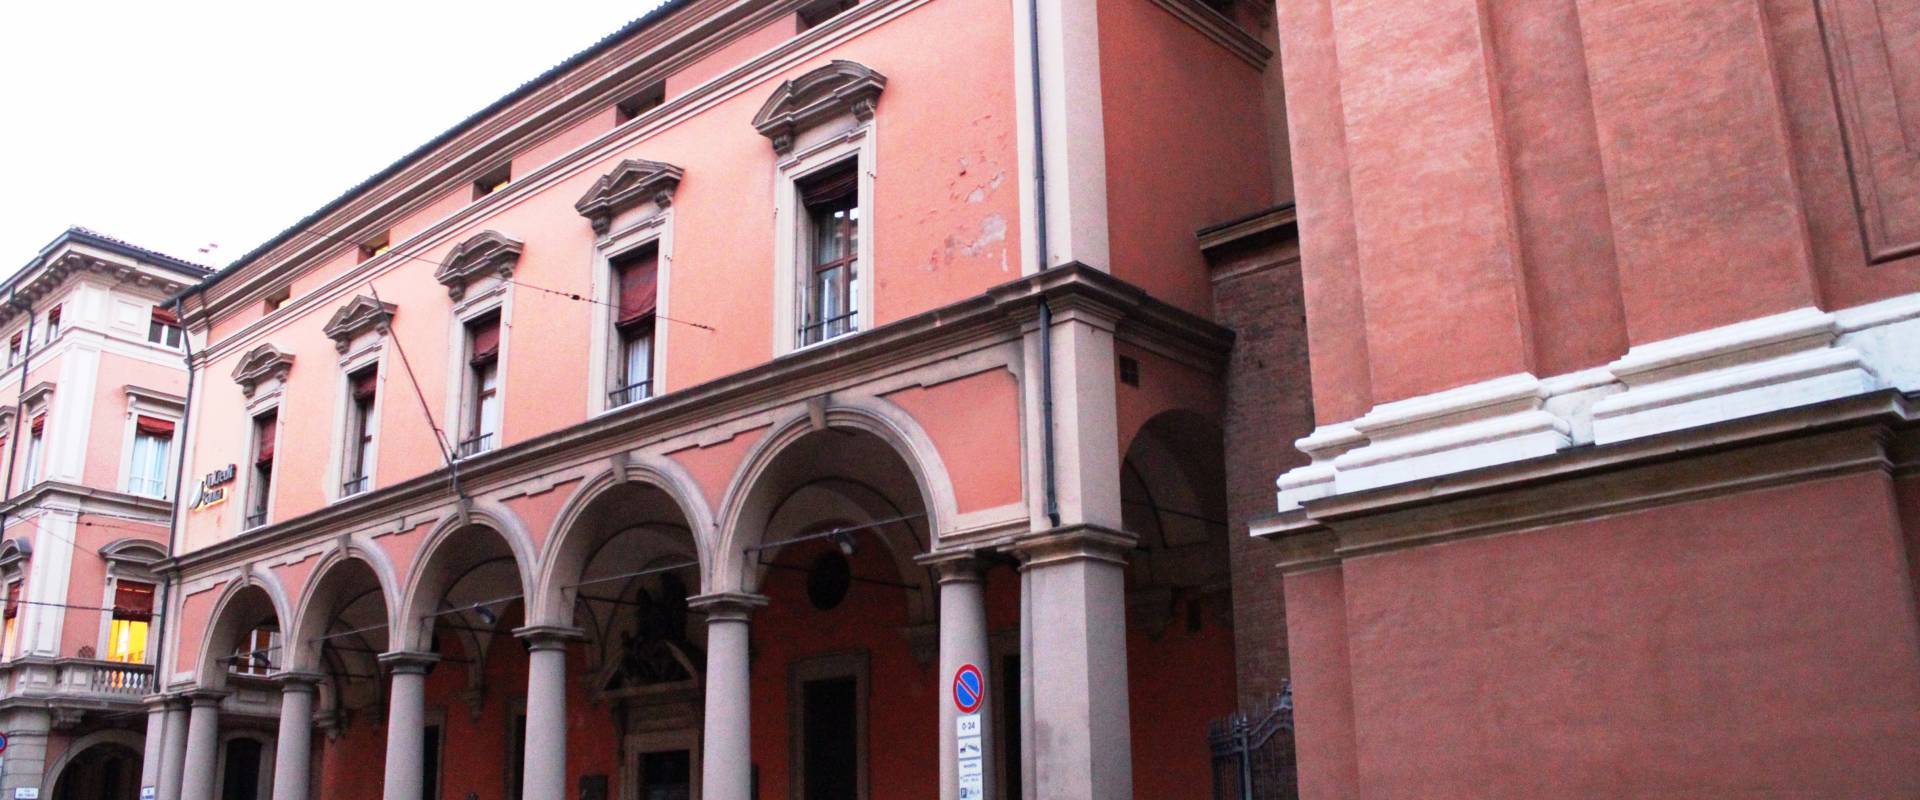 Le colonne leggere del portico della Cattedrale di San Pietro a Bologna foto di Mariaorecchia